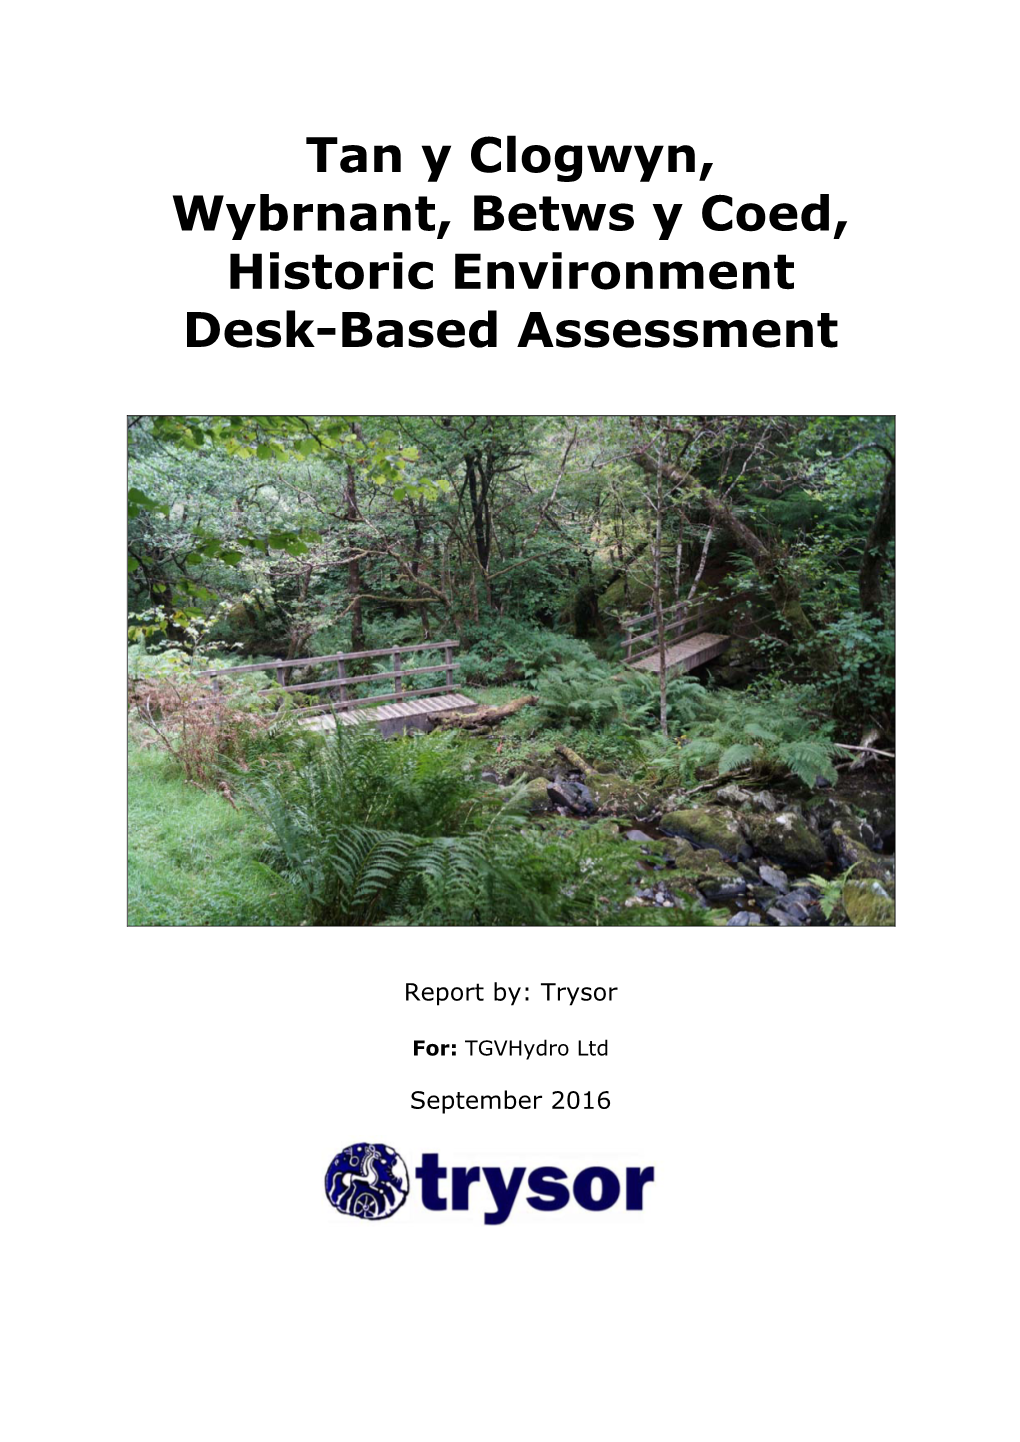 Tan Y Clogwyn, Wybrnant, Betws Y Coed, Historic Environment Desk-Based Assessment